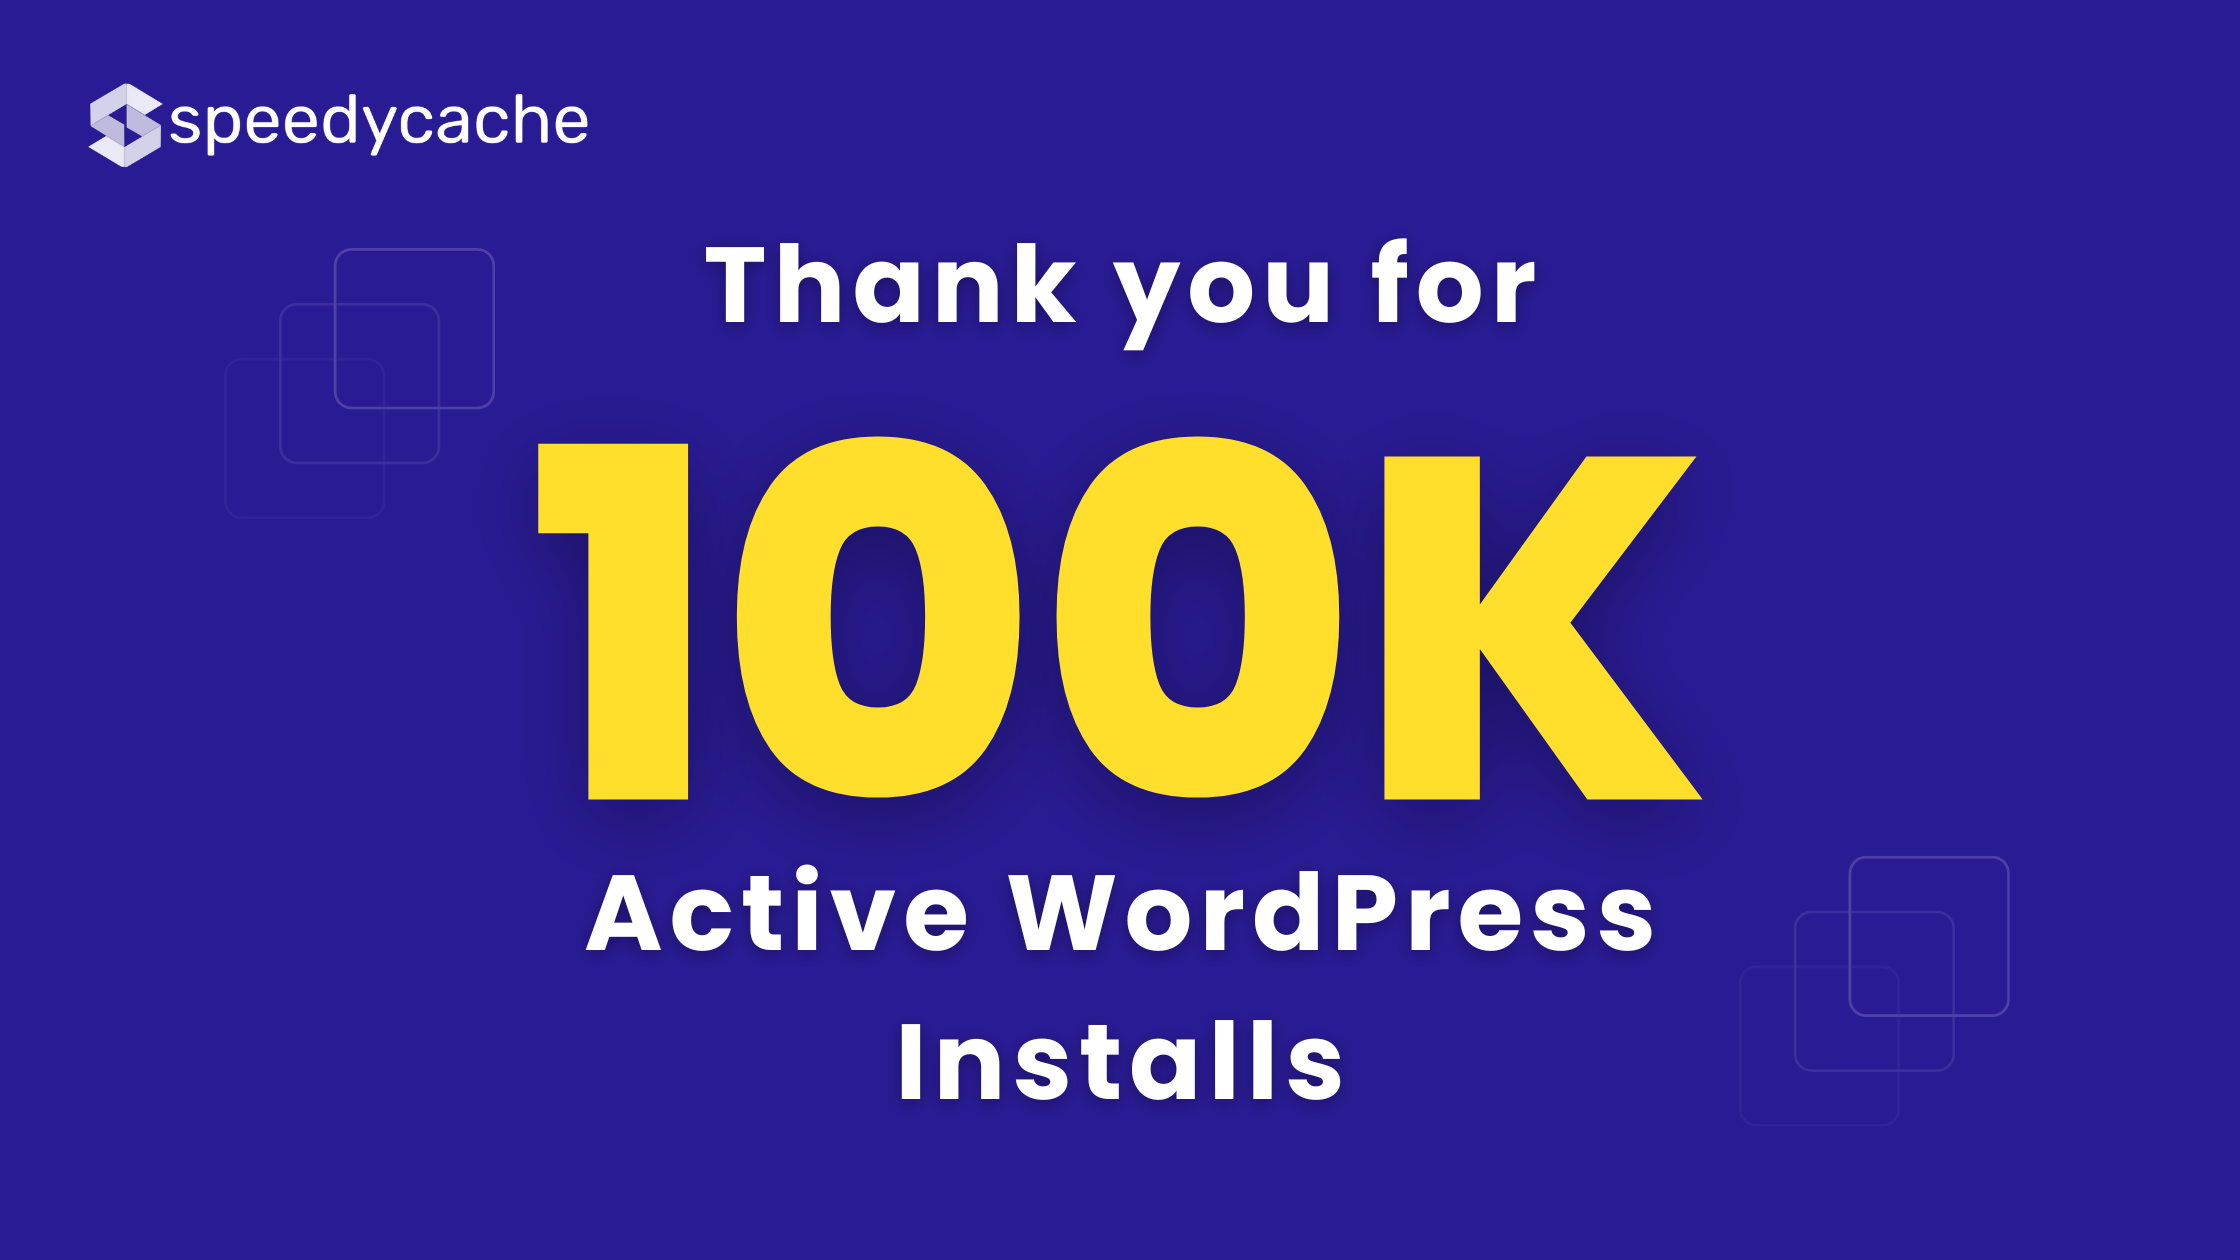 SpeedyCache Crossed 100K Active WordPress installs